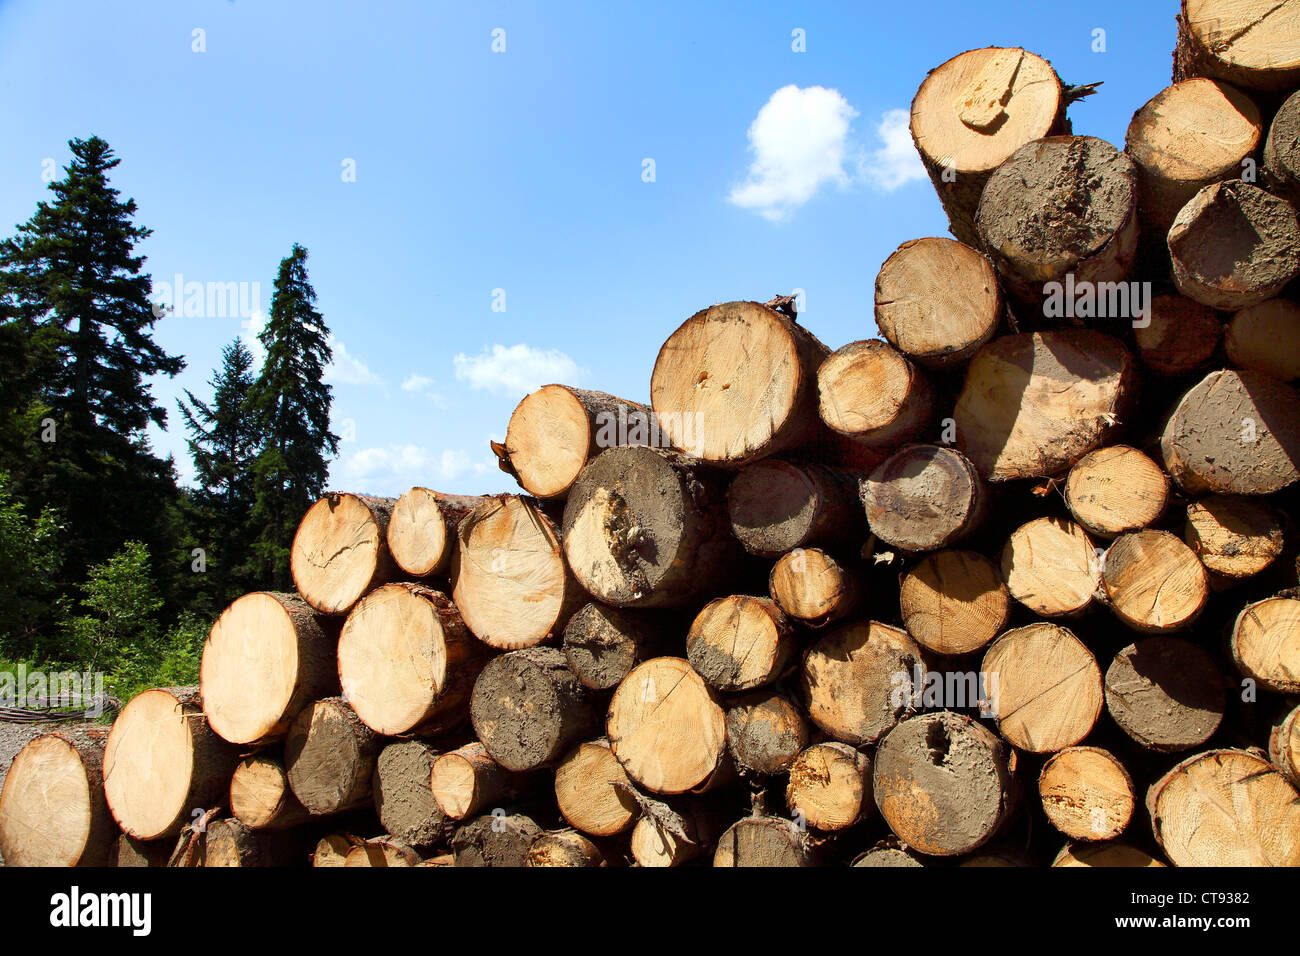 Un tas de bois dans une forêt. Les troncs d'arbres empilés, prêt à être transporté à une scierie. Banque D'Images